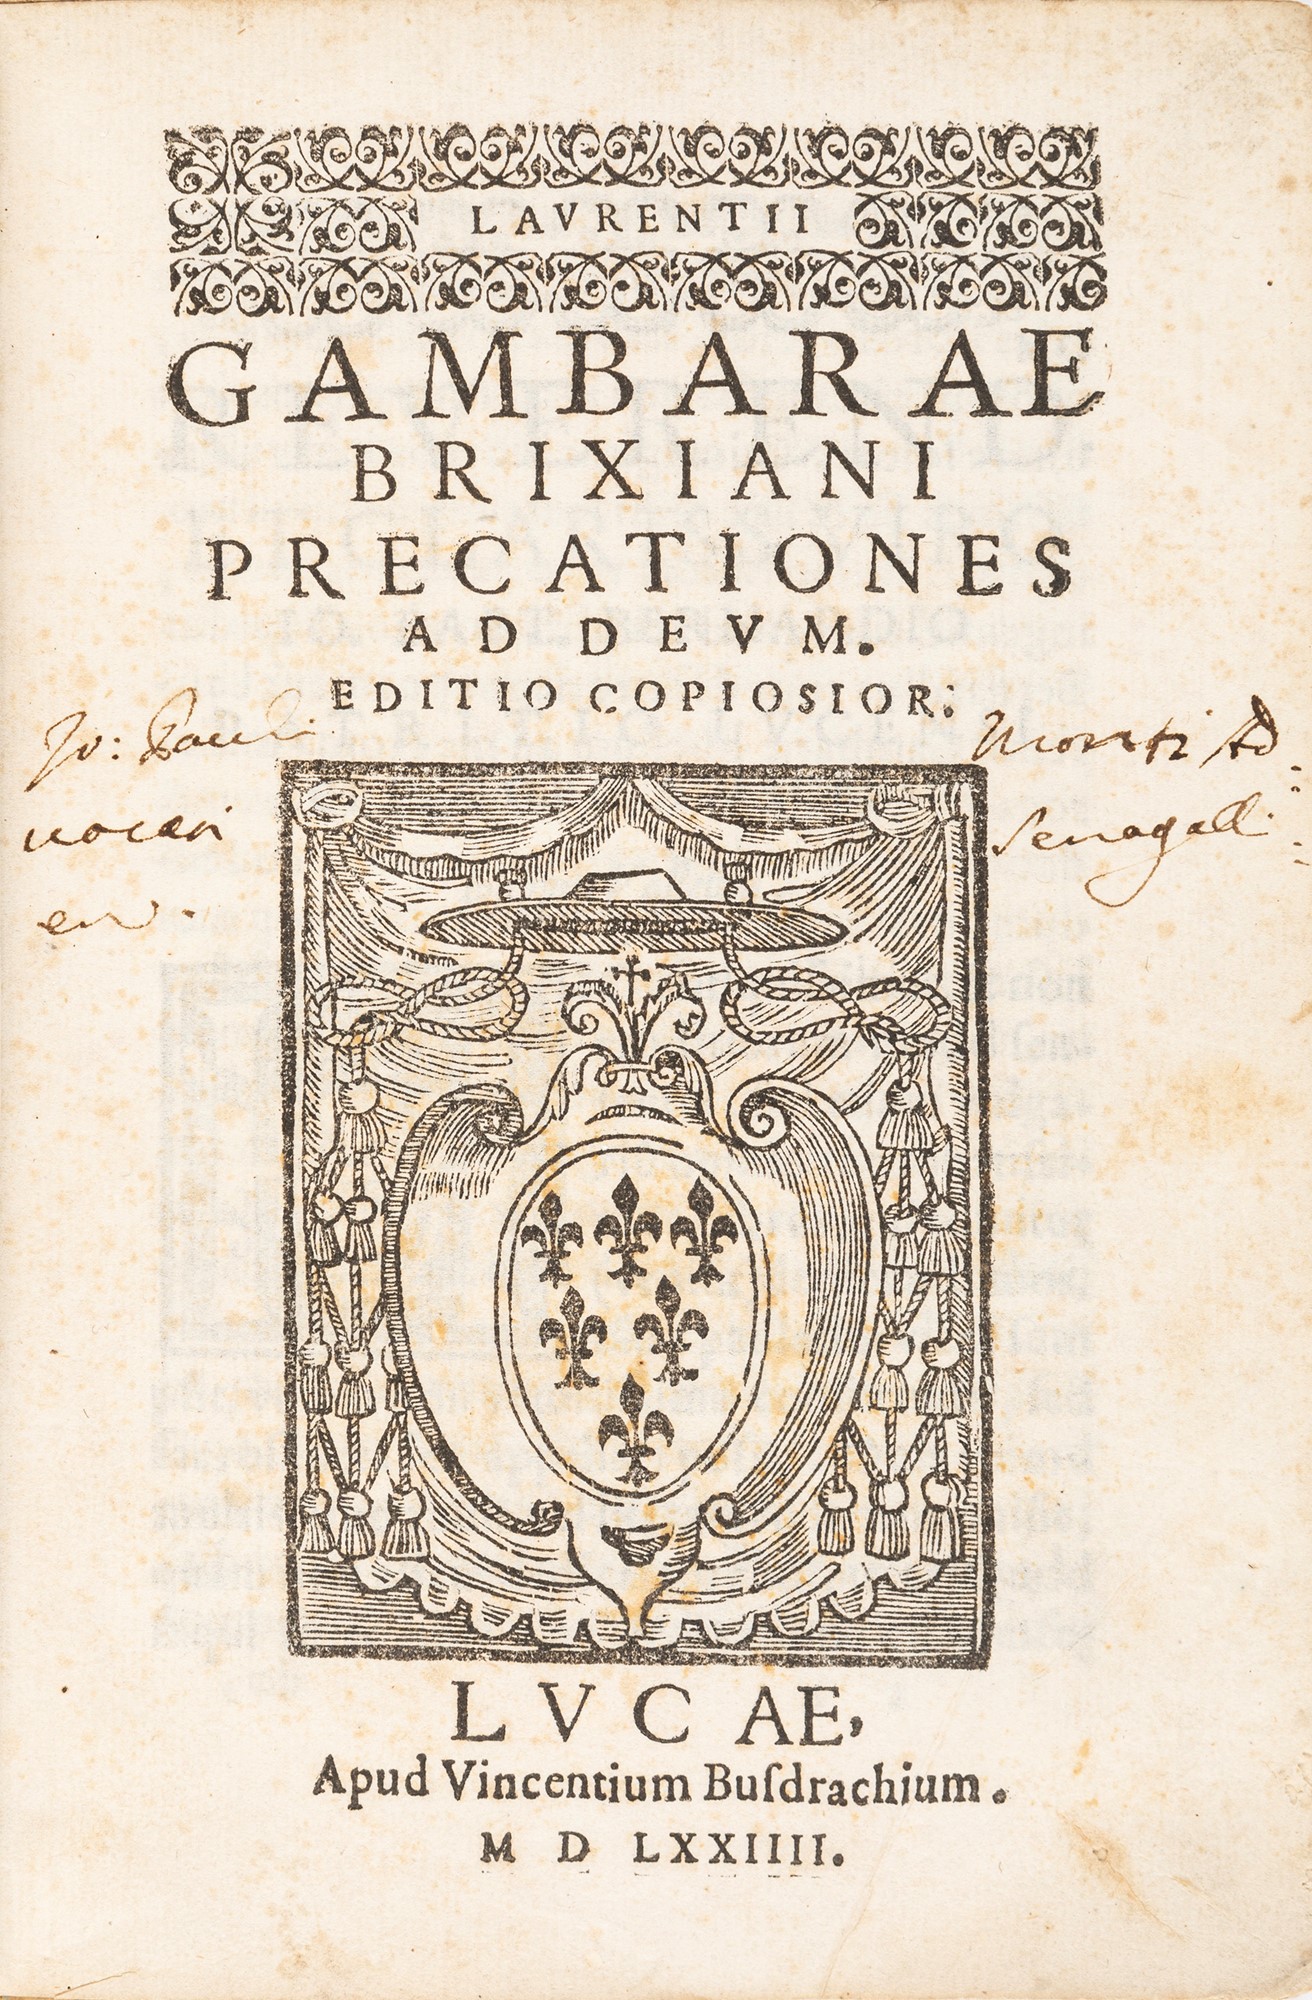 Gambara, Lorenzo - Precations ad deum